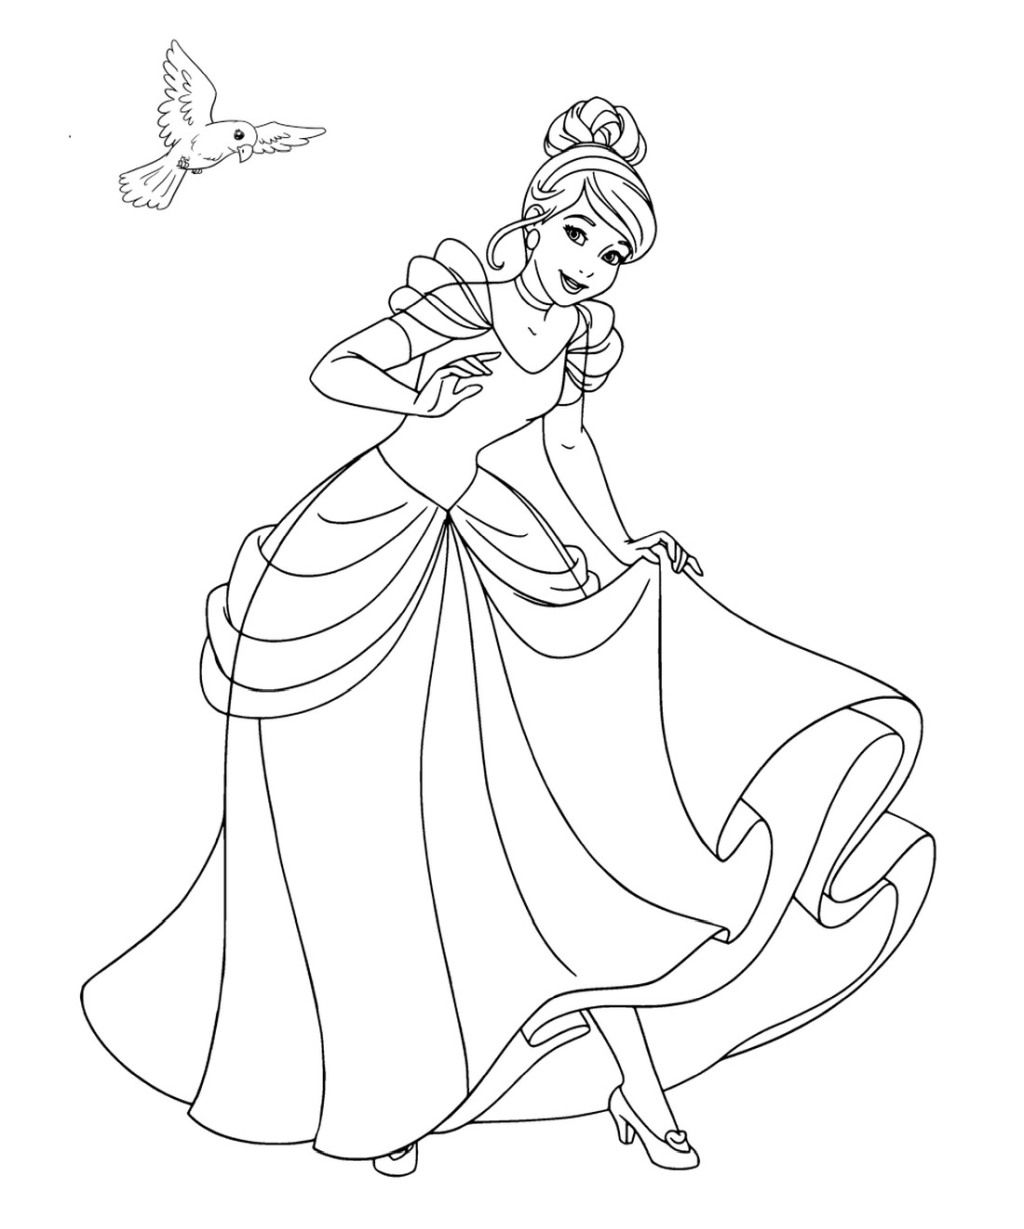 Cinderella princess coloring